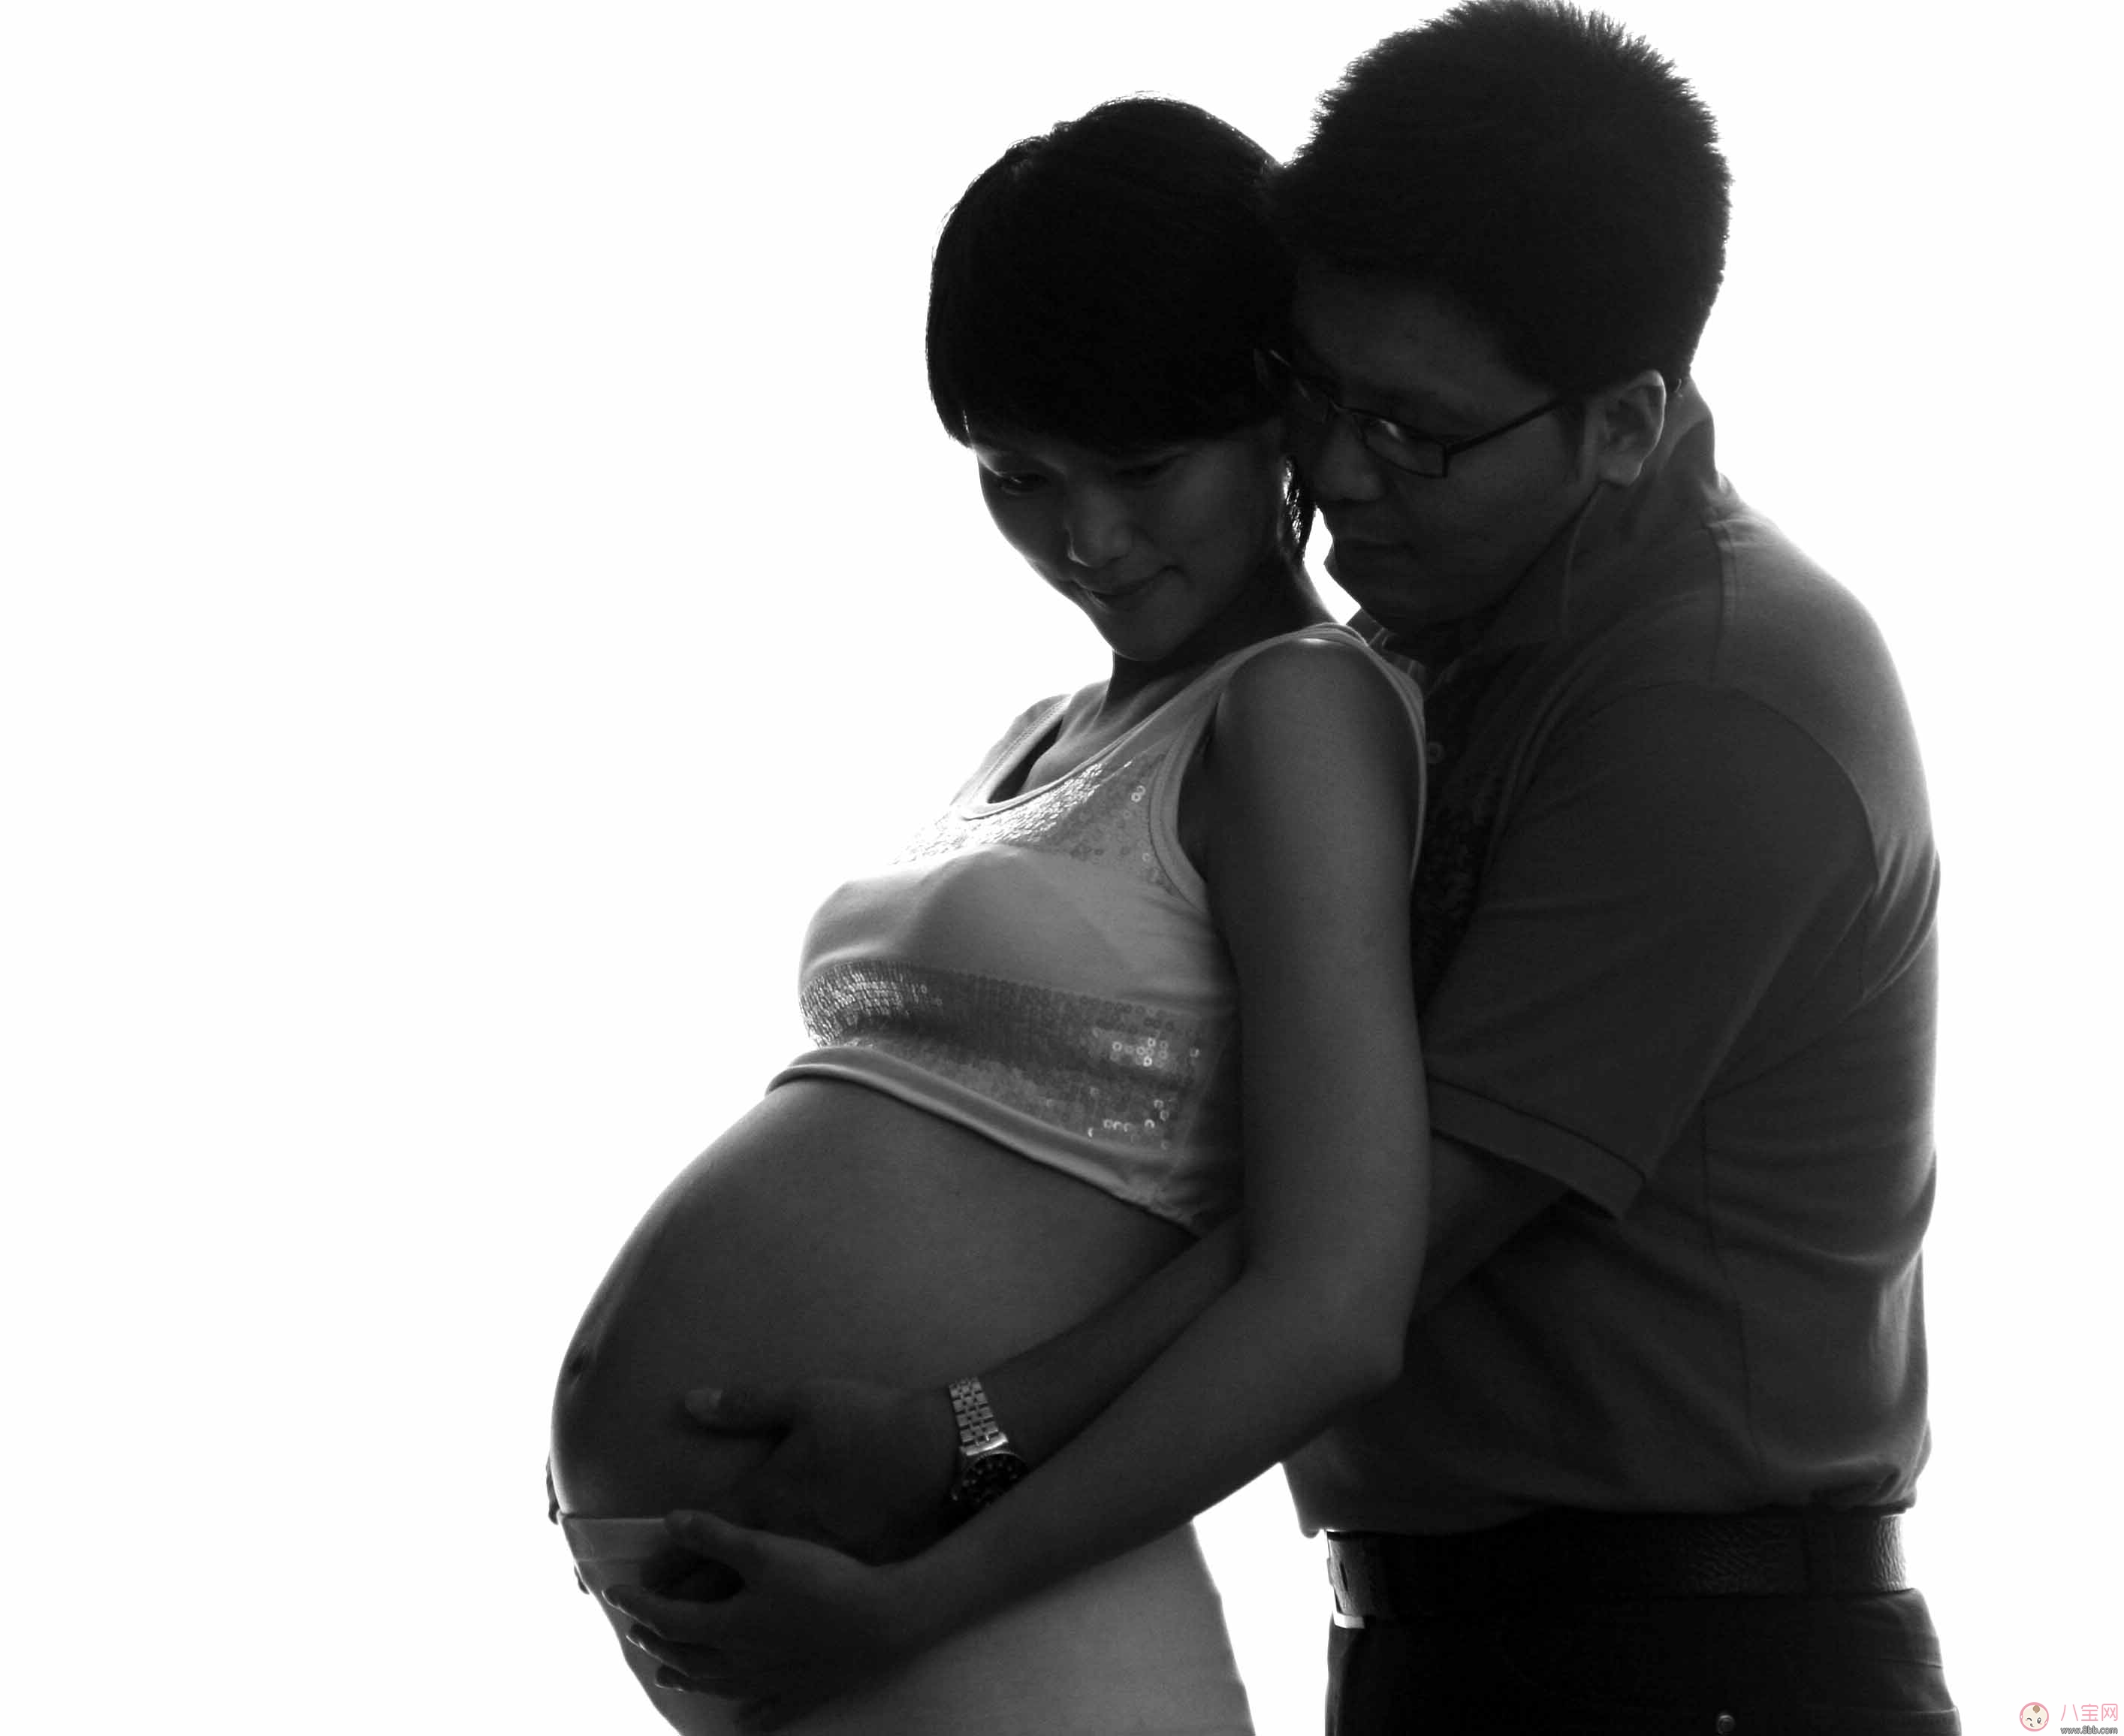 怀孕第三个月可以同房吗 孕期哪些情况不能同房